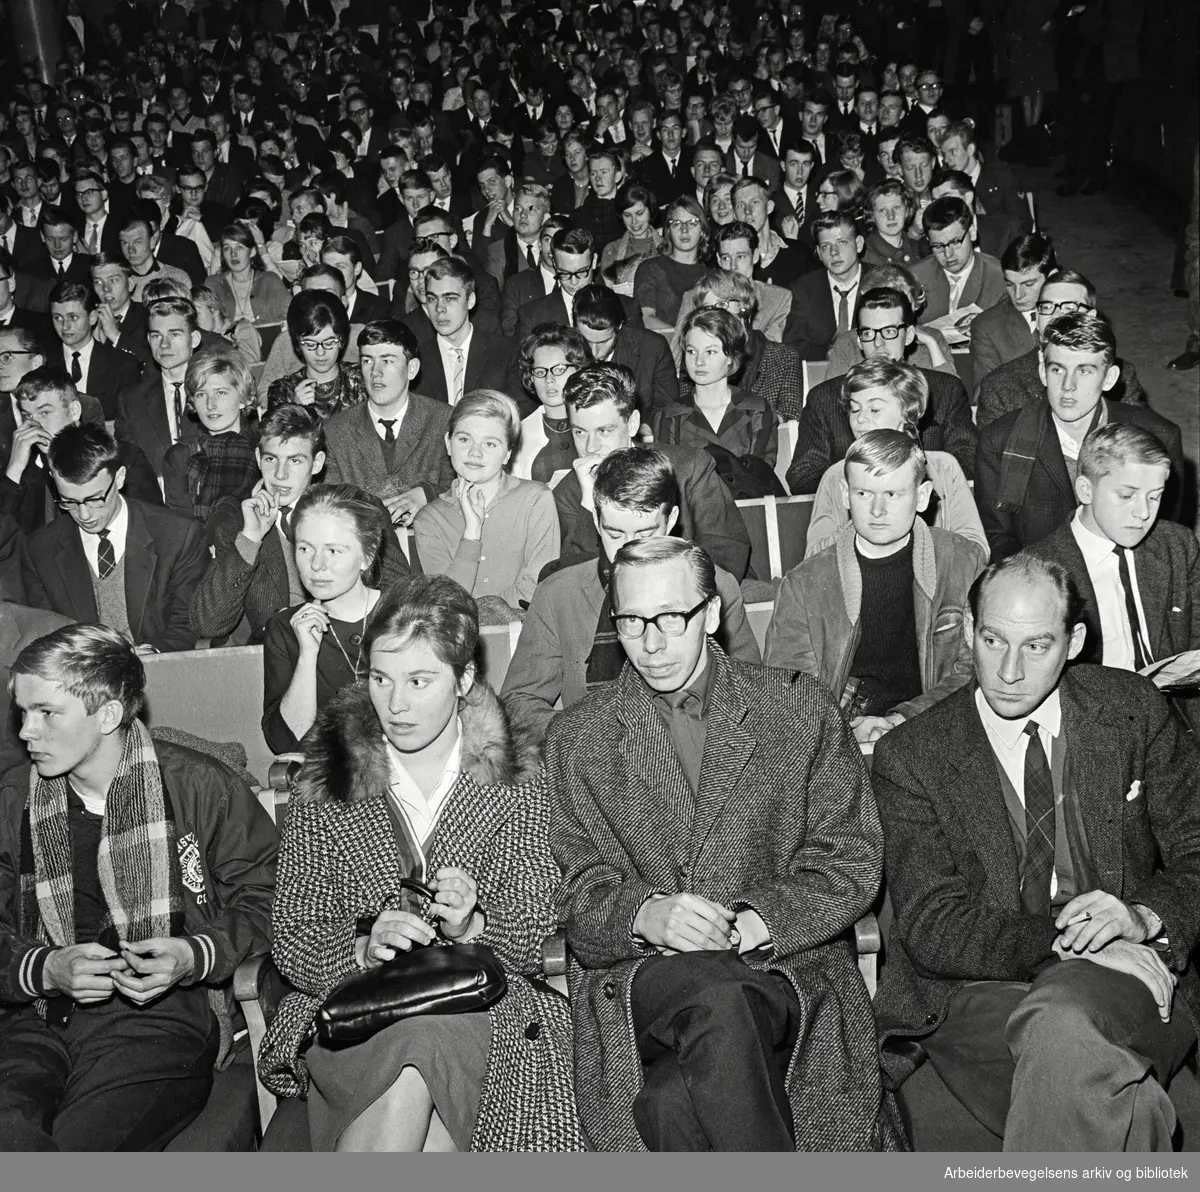 NM i jazz for amatører. 25. November 1962. Publikum i Klingenberg kino. I første rekke (med briller), forfatteren og journalisten Bengt Calmeyer. På femte rad til venstre i bildet, sangerinnen Karin Krog.